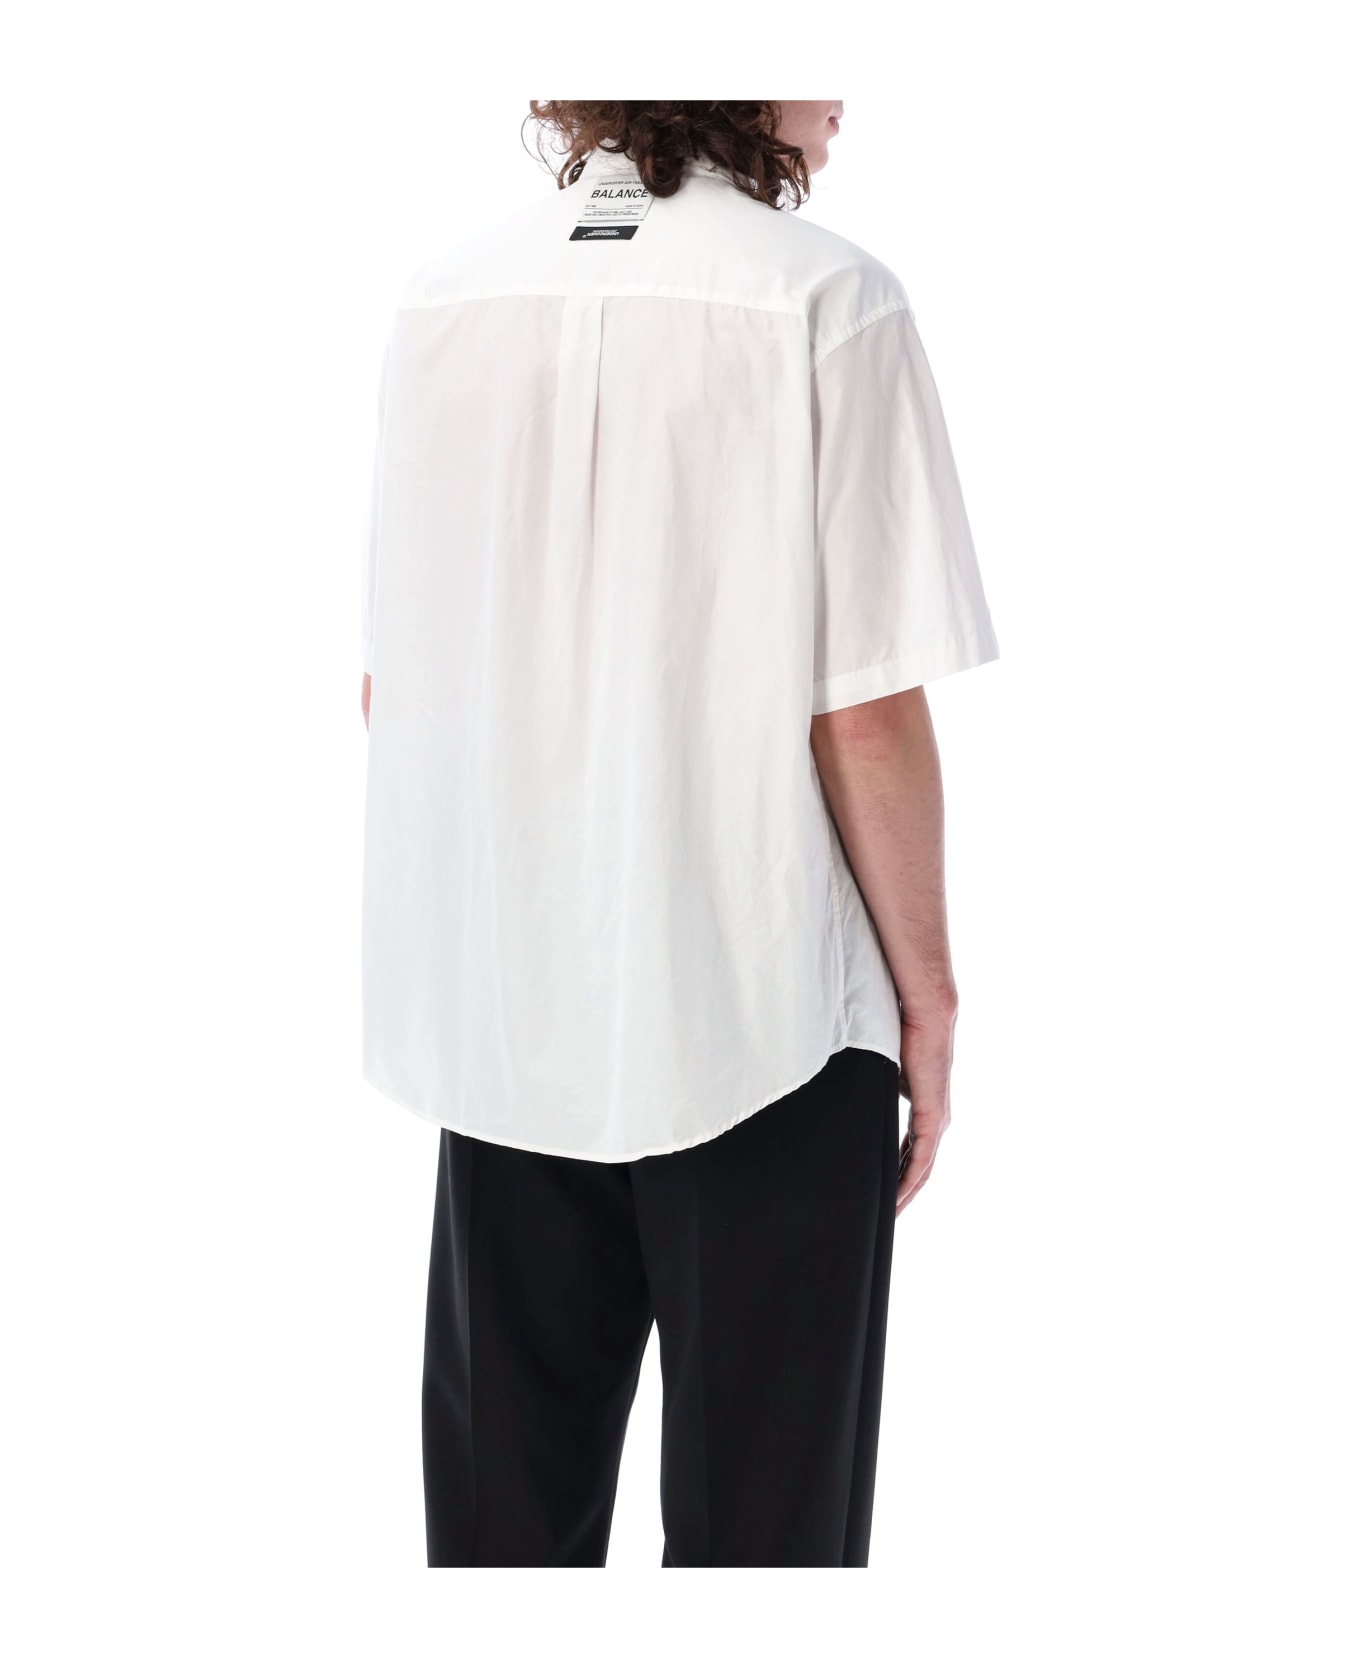 Undercover Jun Takahashi Label S/s Shirt - WHITE